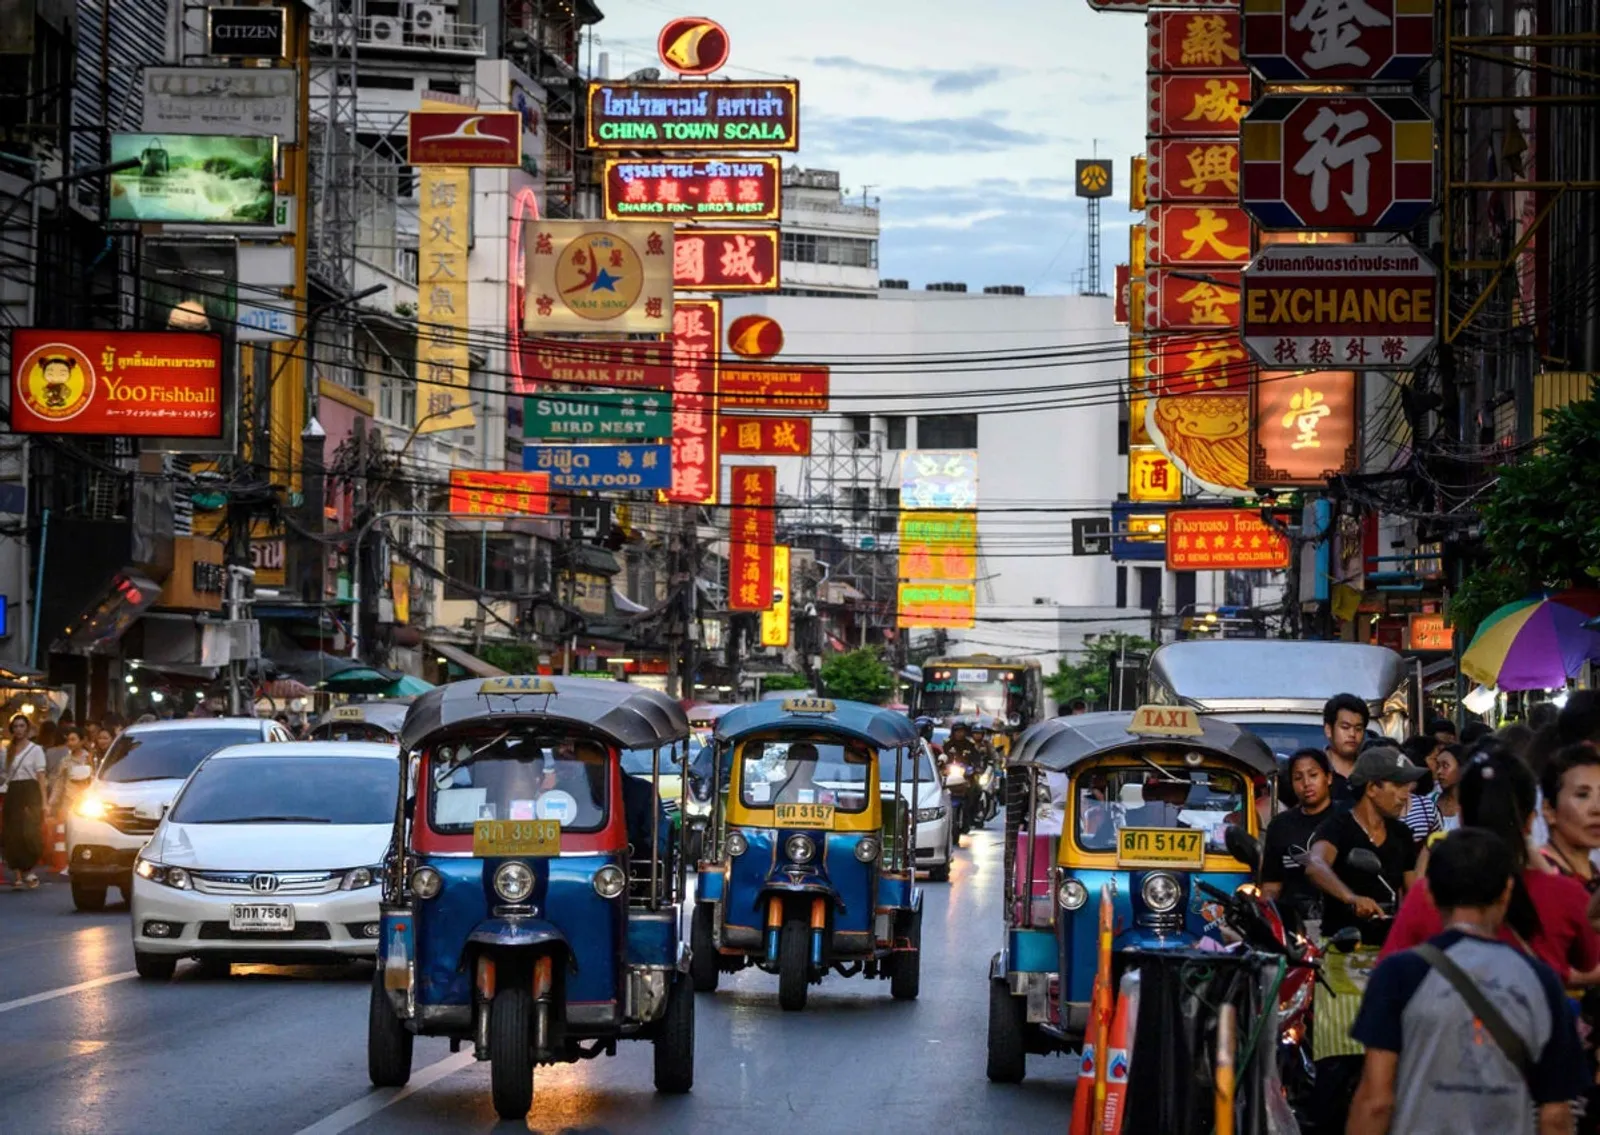 Murah dan Lengkap, Ini 7 Lokasi Tempat Belanja Oleh-oleh di Thailand